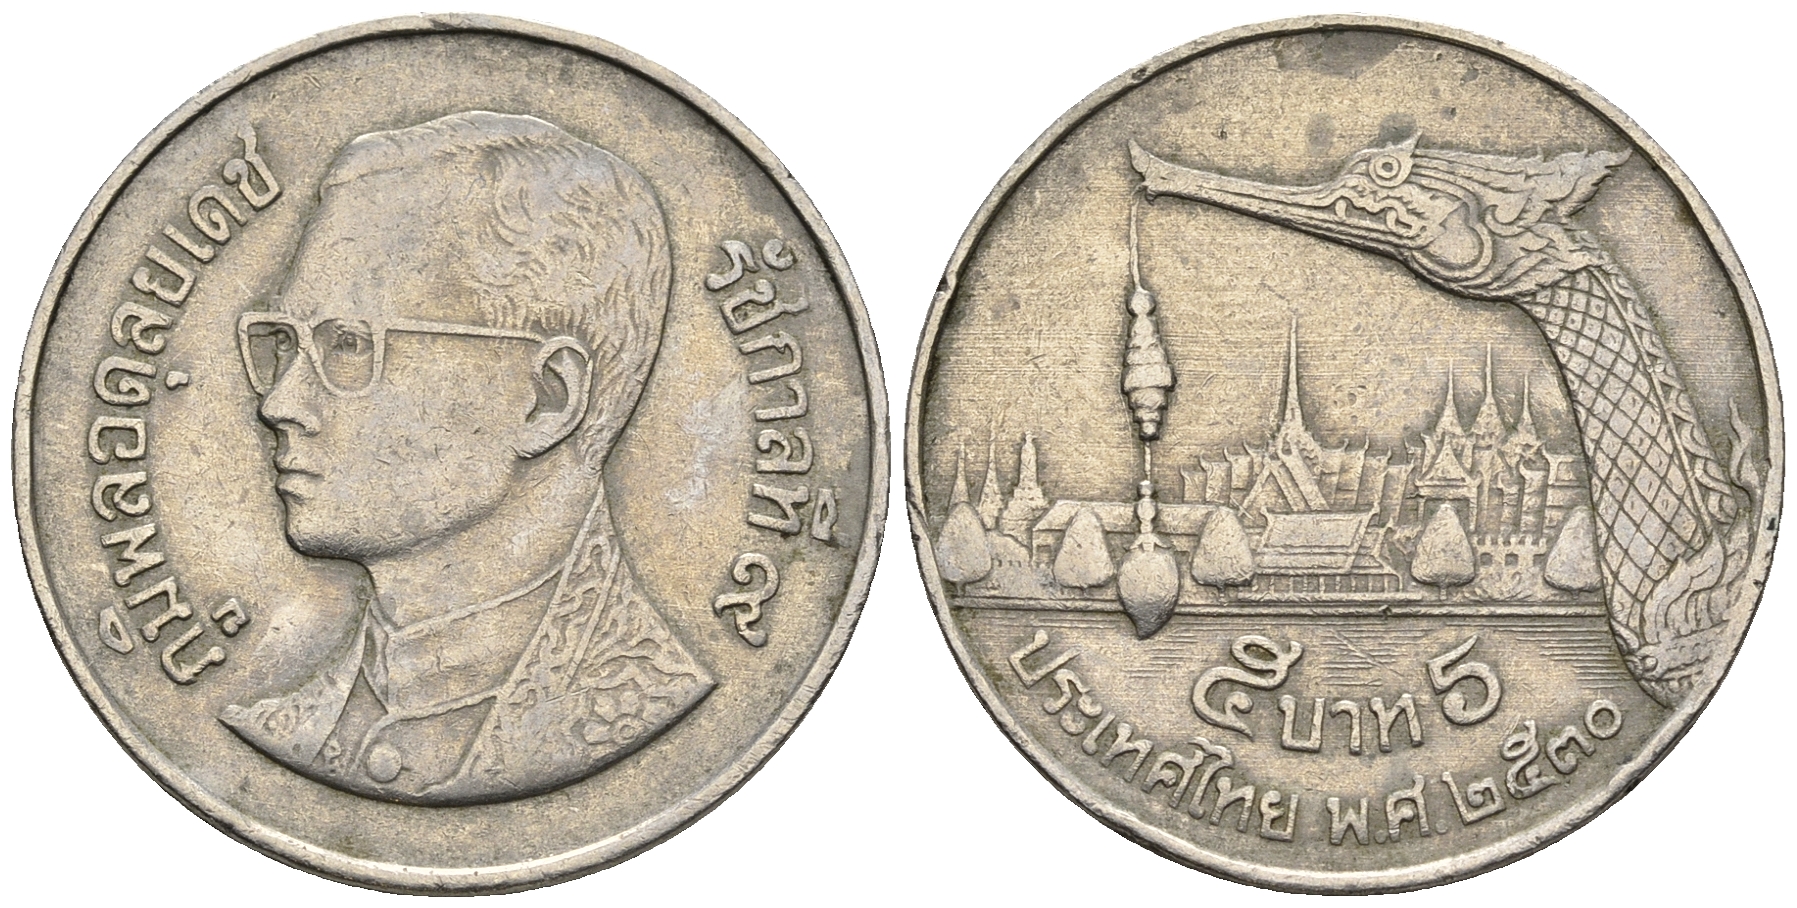 Бат в рублях на сегодня тайланде 1. Монета Тайланда 1 бат. 1 Бат 2005 Таиланд. Монеты 1 бат 2004 Таиланд. Монетка Тайланд 1 бат.